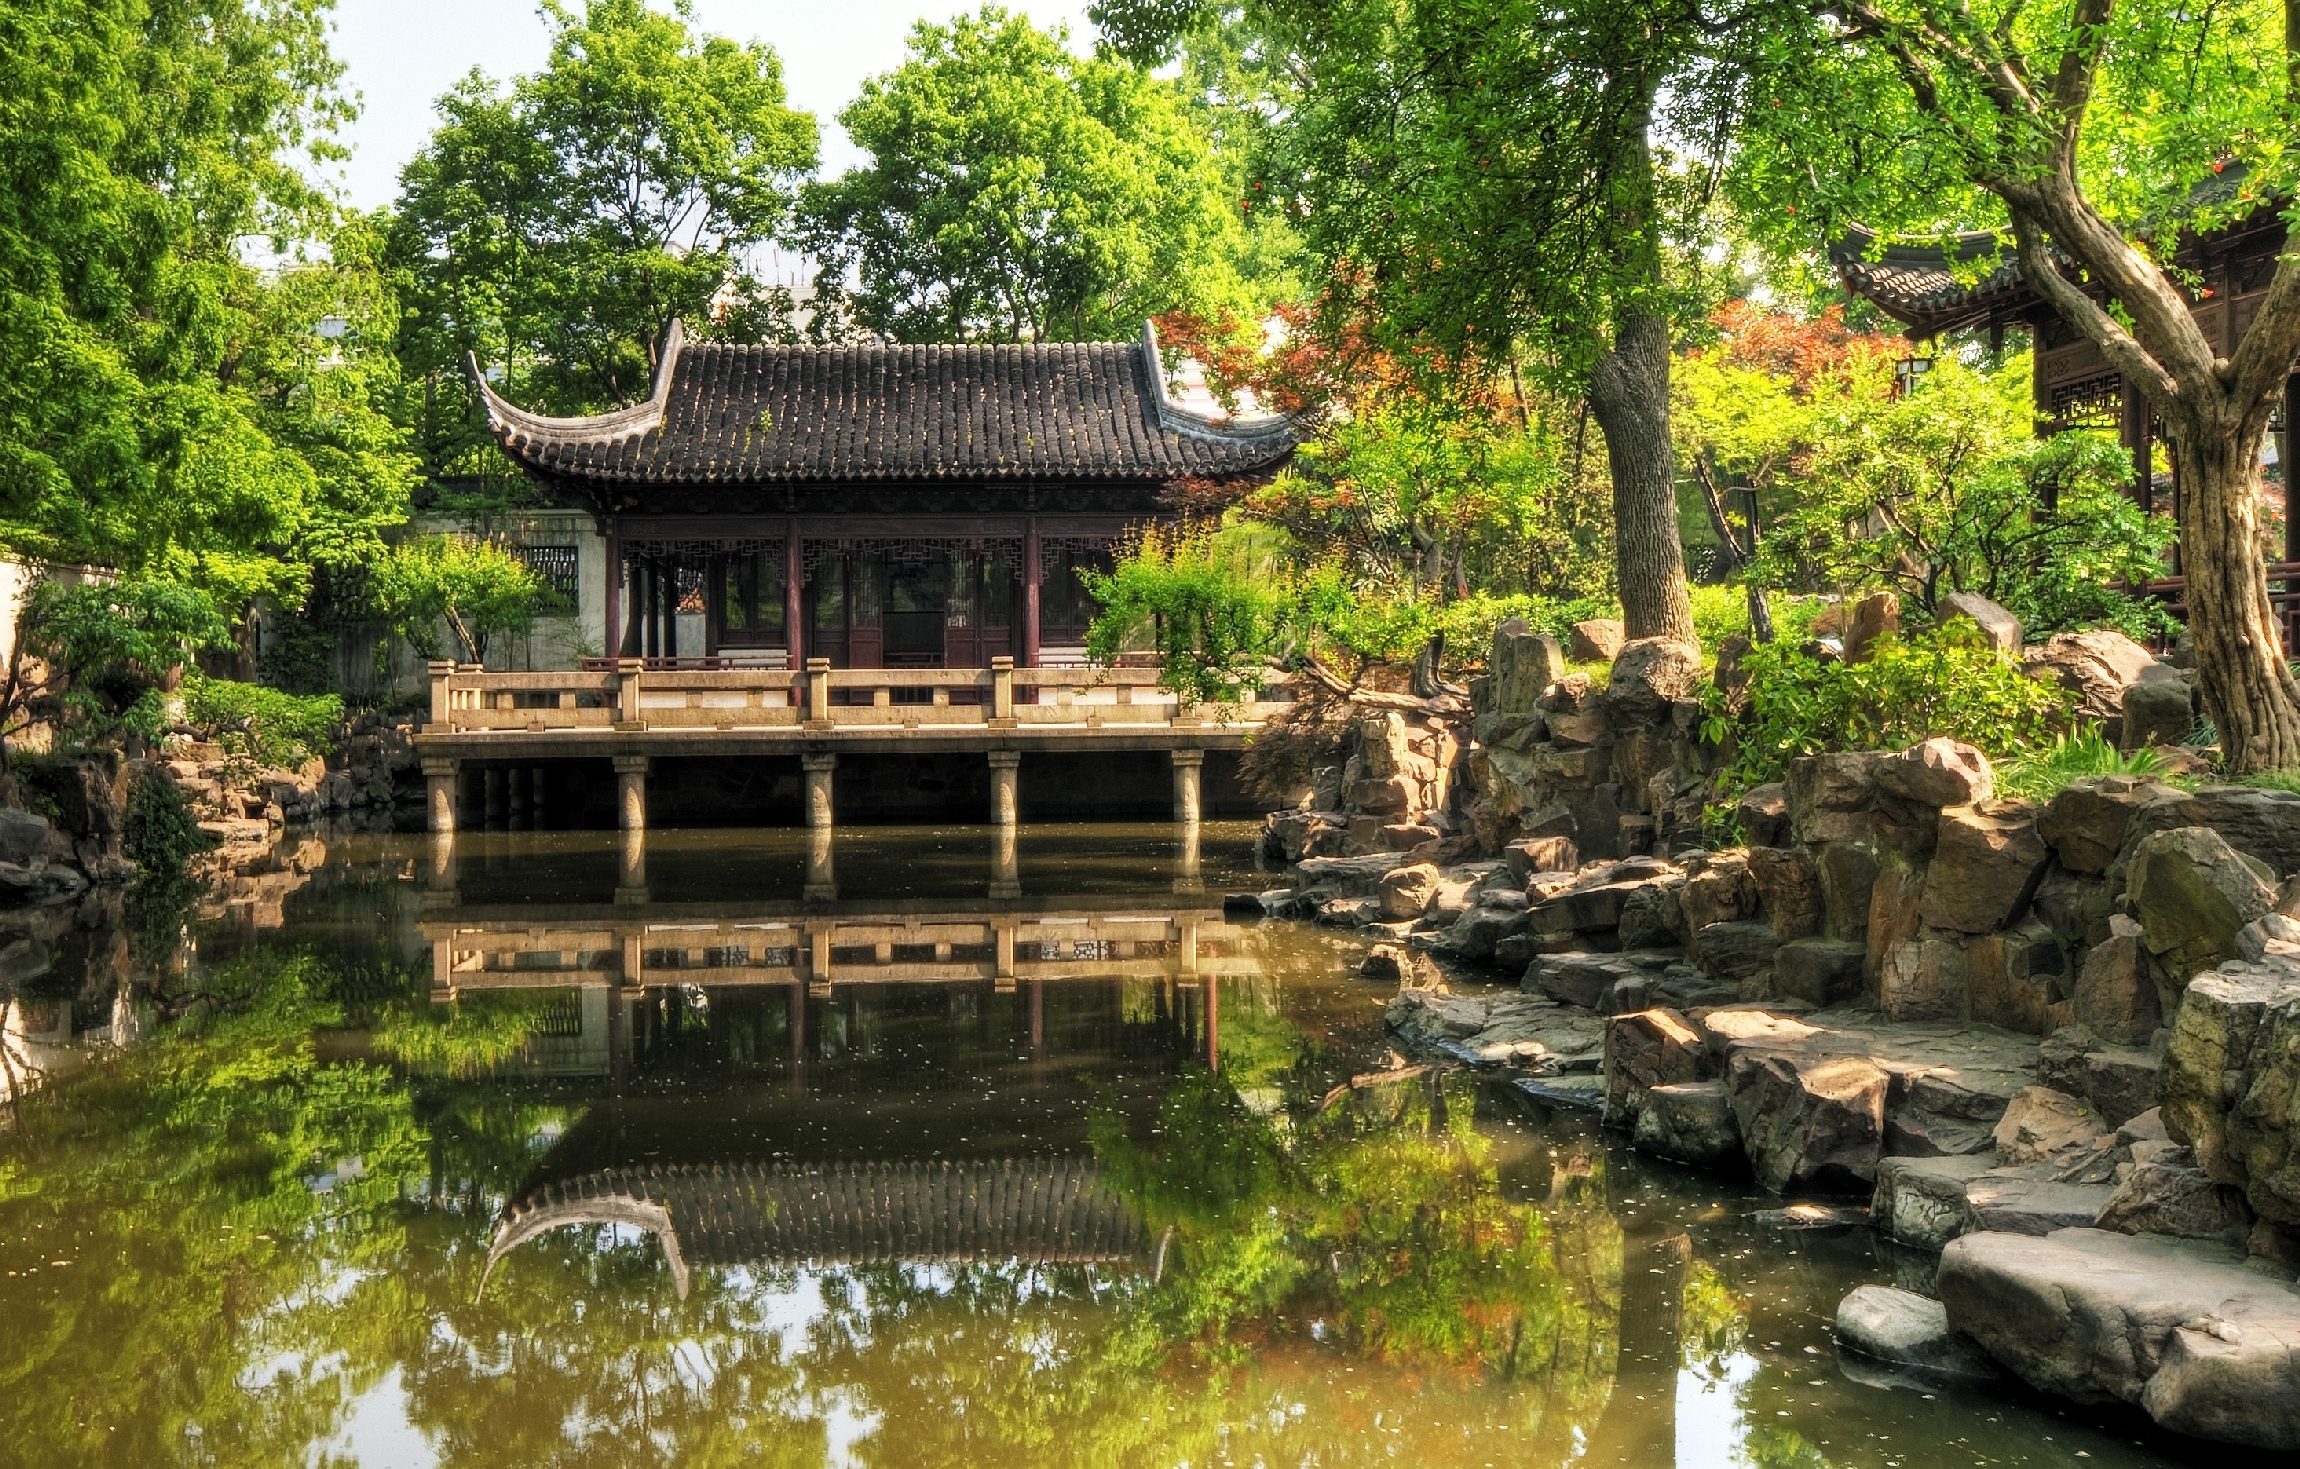 2. Китайский сад – история и философия